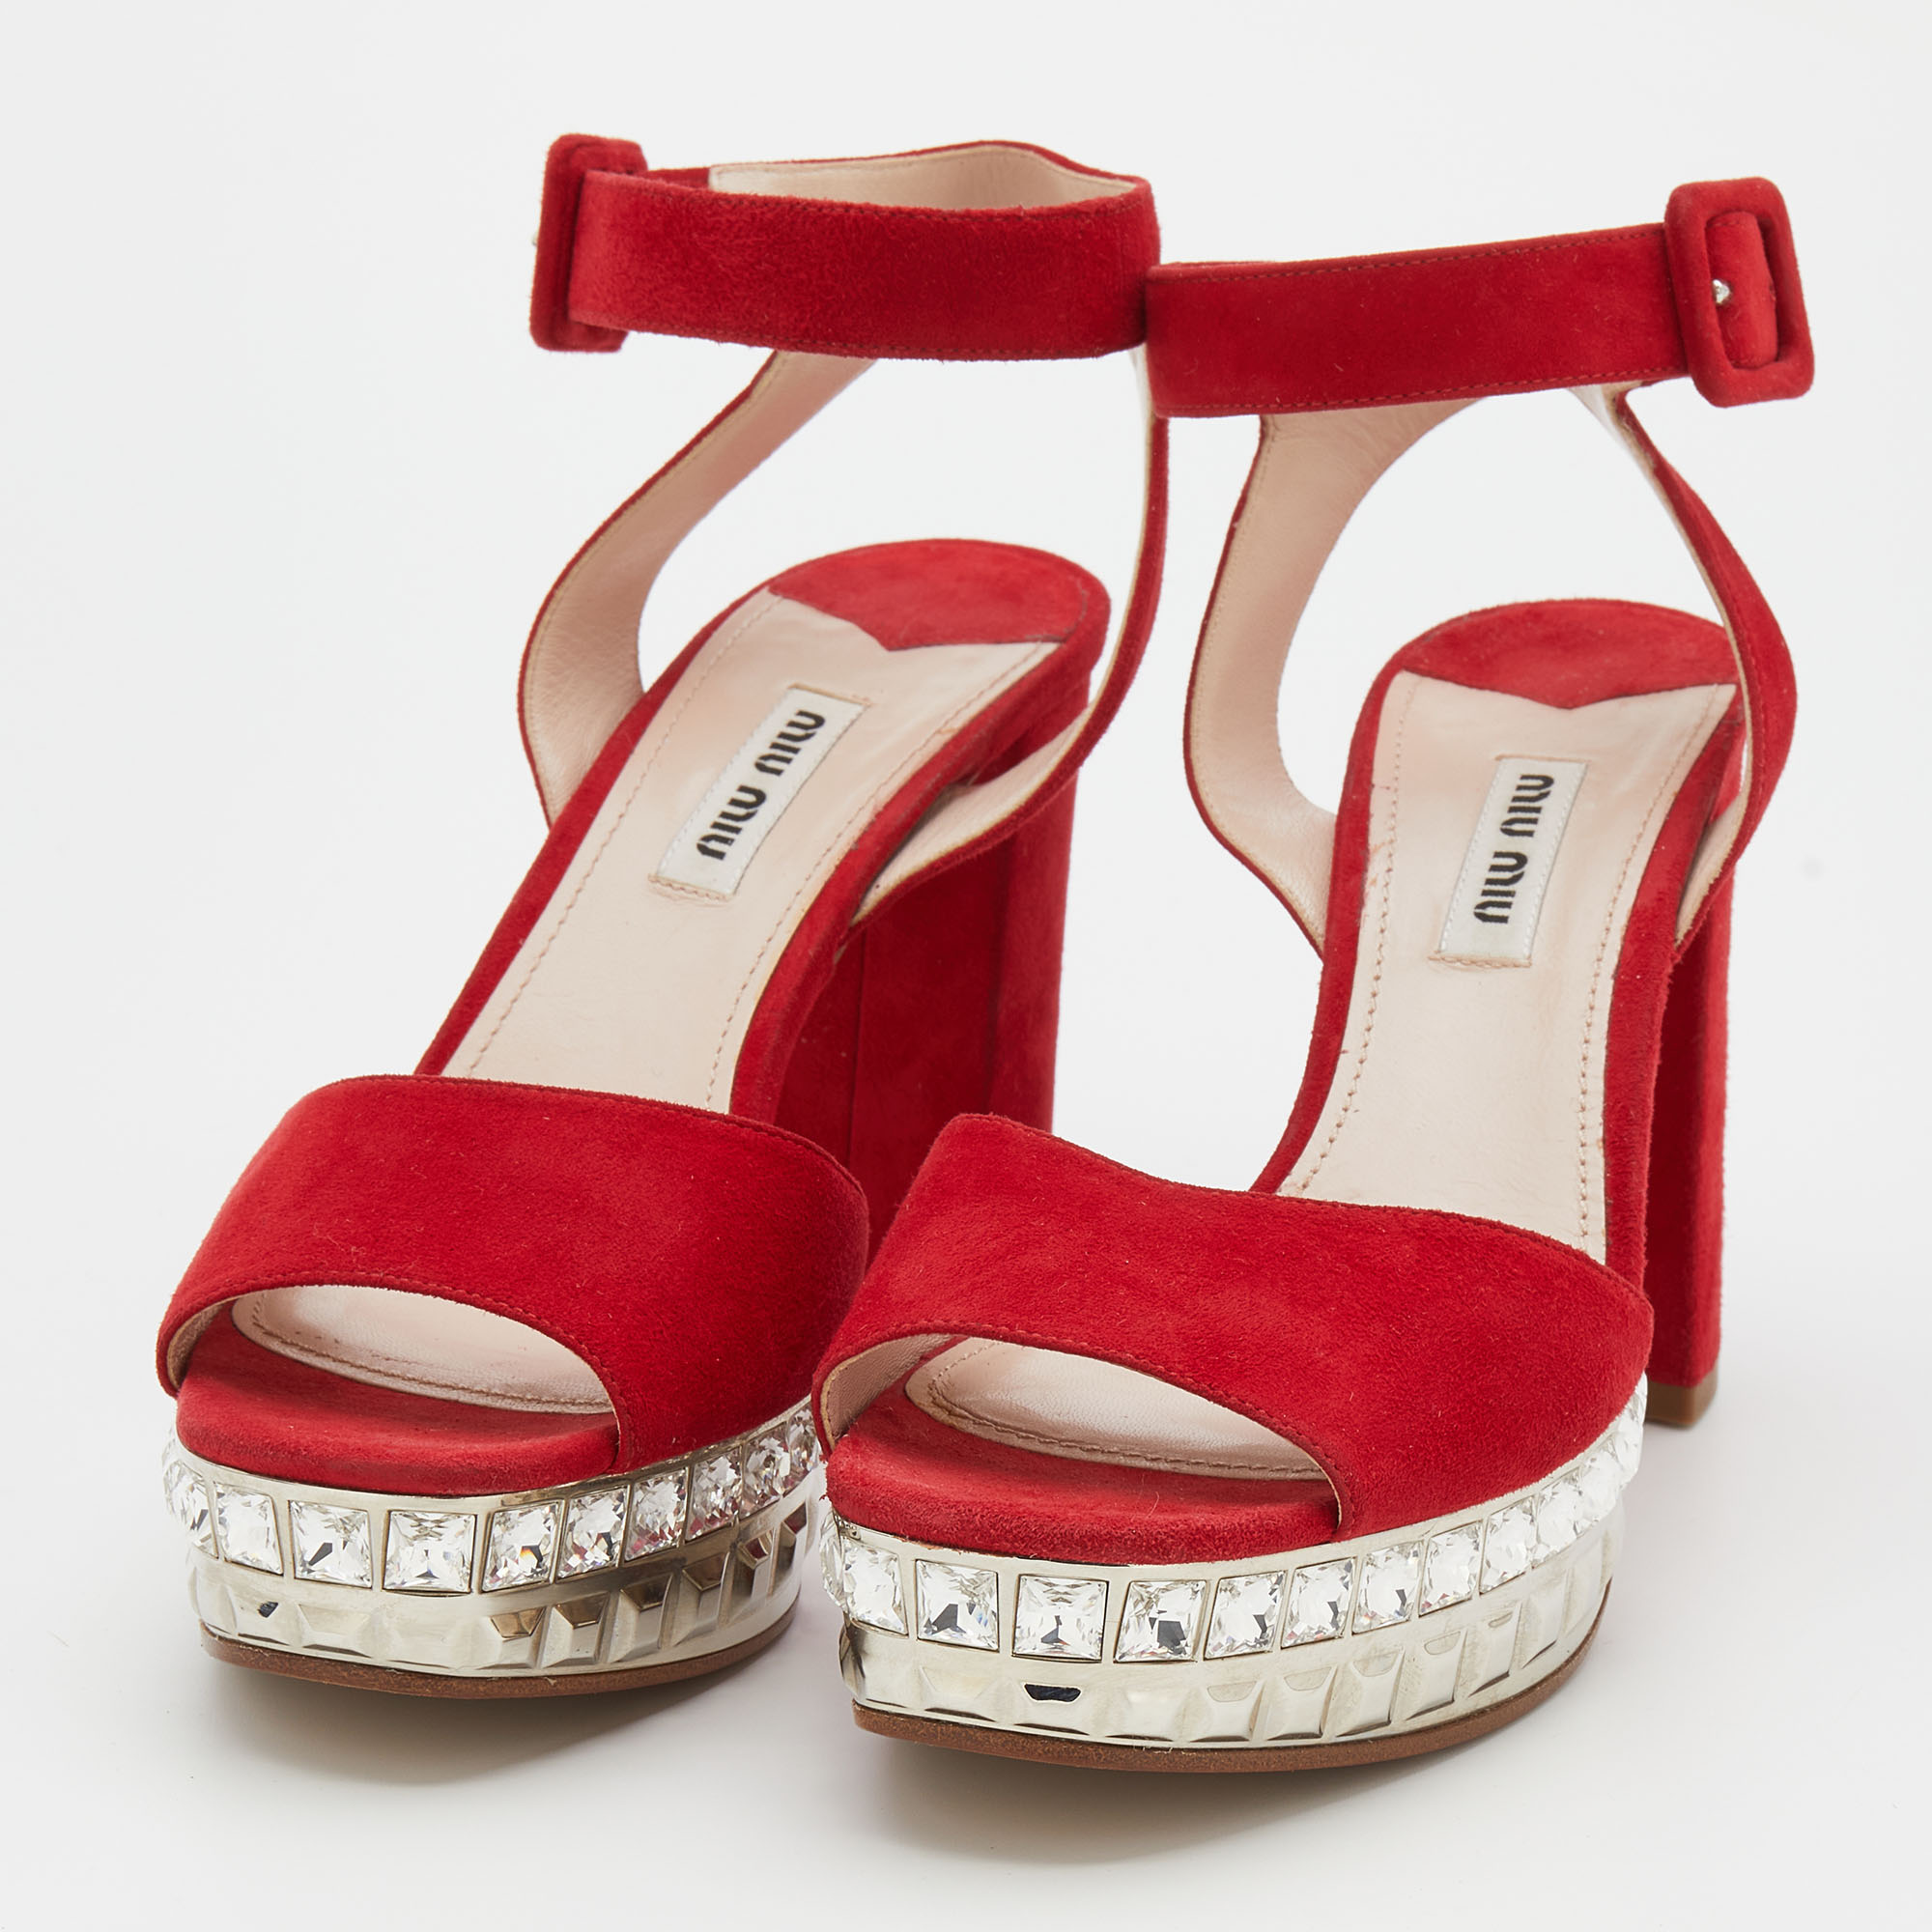 

Miu Miu Red Suede Crystal Embellished Platform Ankle-Strap Sandals Size